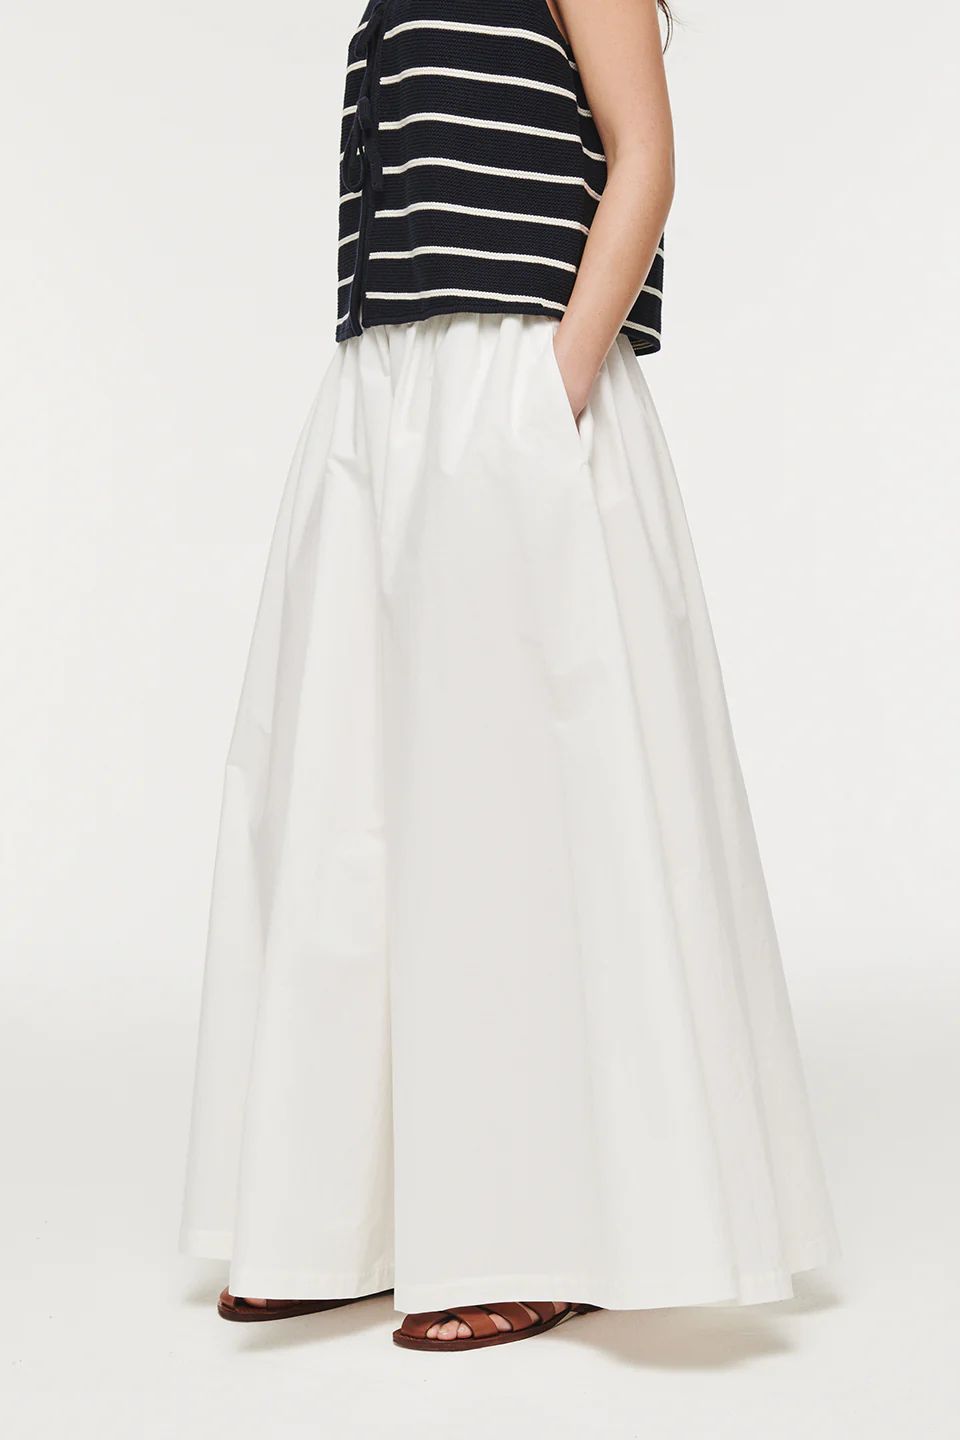 Natalie | Full Length Poplin Skirt in White | ALIGNE | Aligne UK